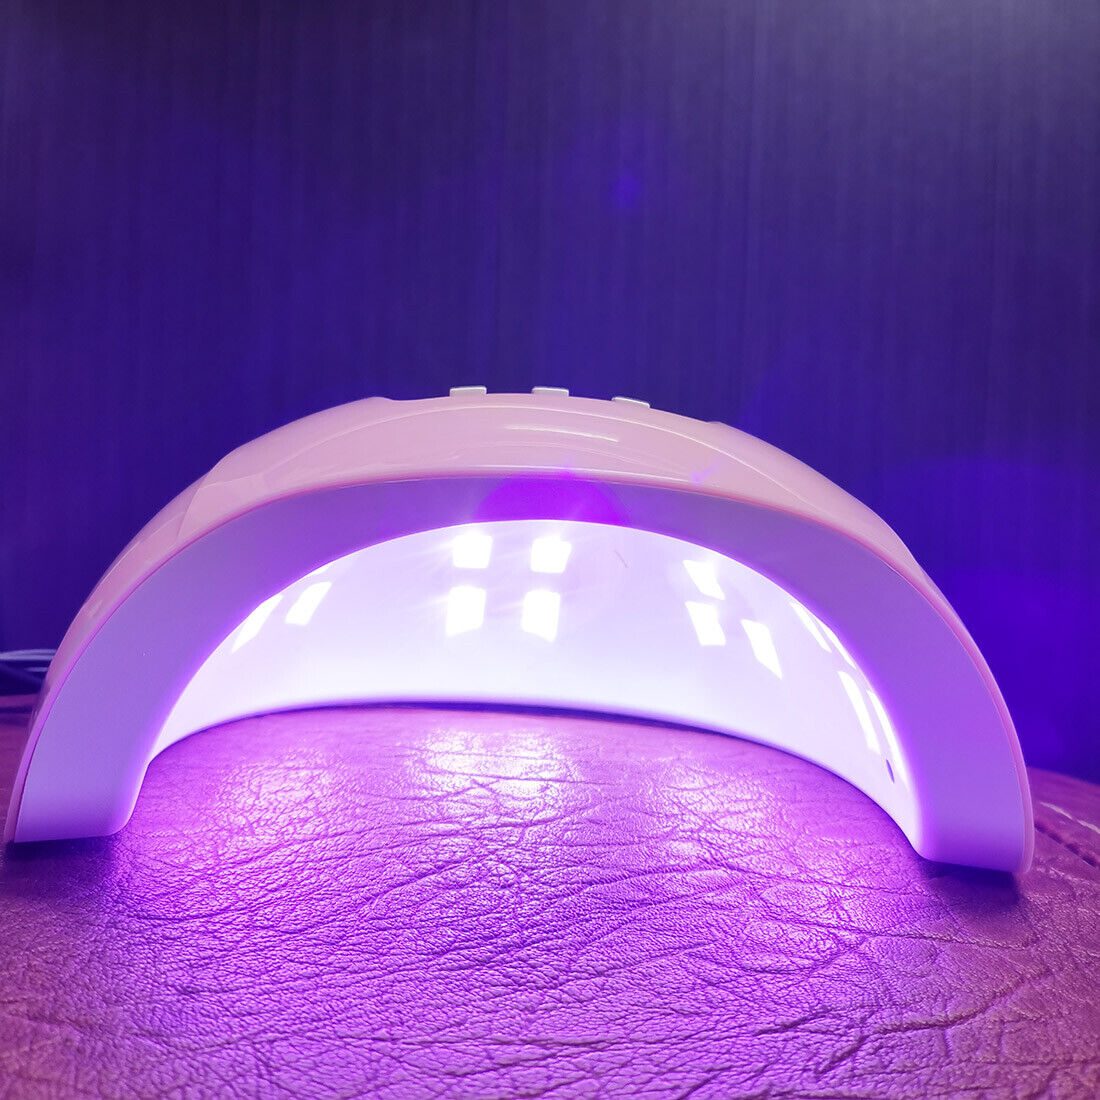 LED UV Nail Polish Dryer Lamp